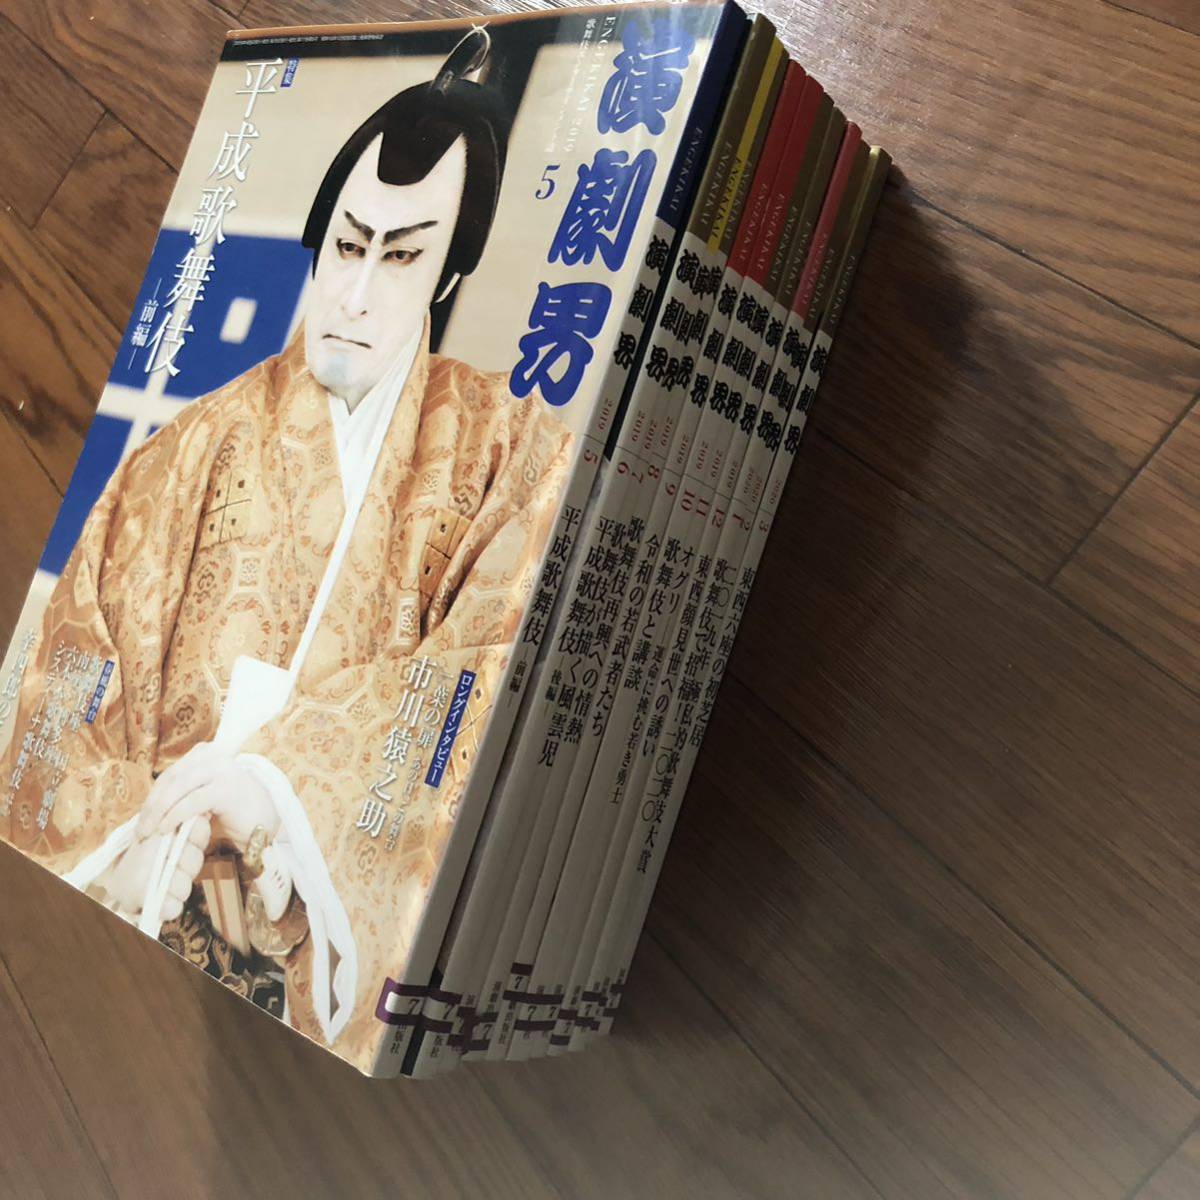  пьеса . kabuki 2019 год 5 месяц ~2020 год 3 месяц до 11 шт. исключая .книга